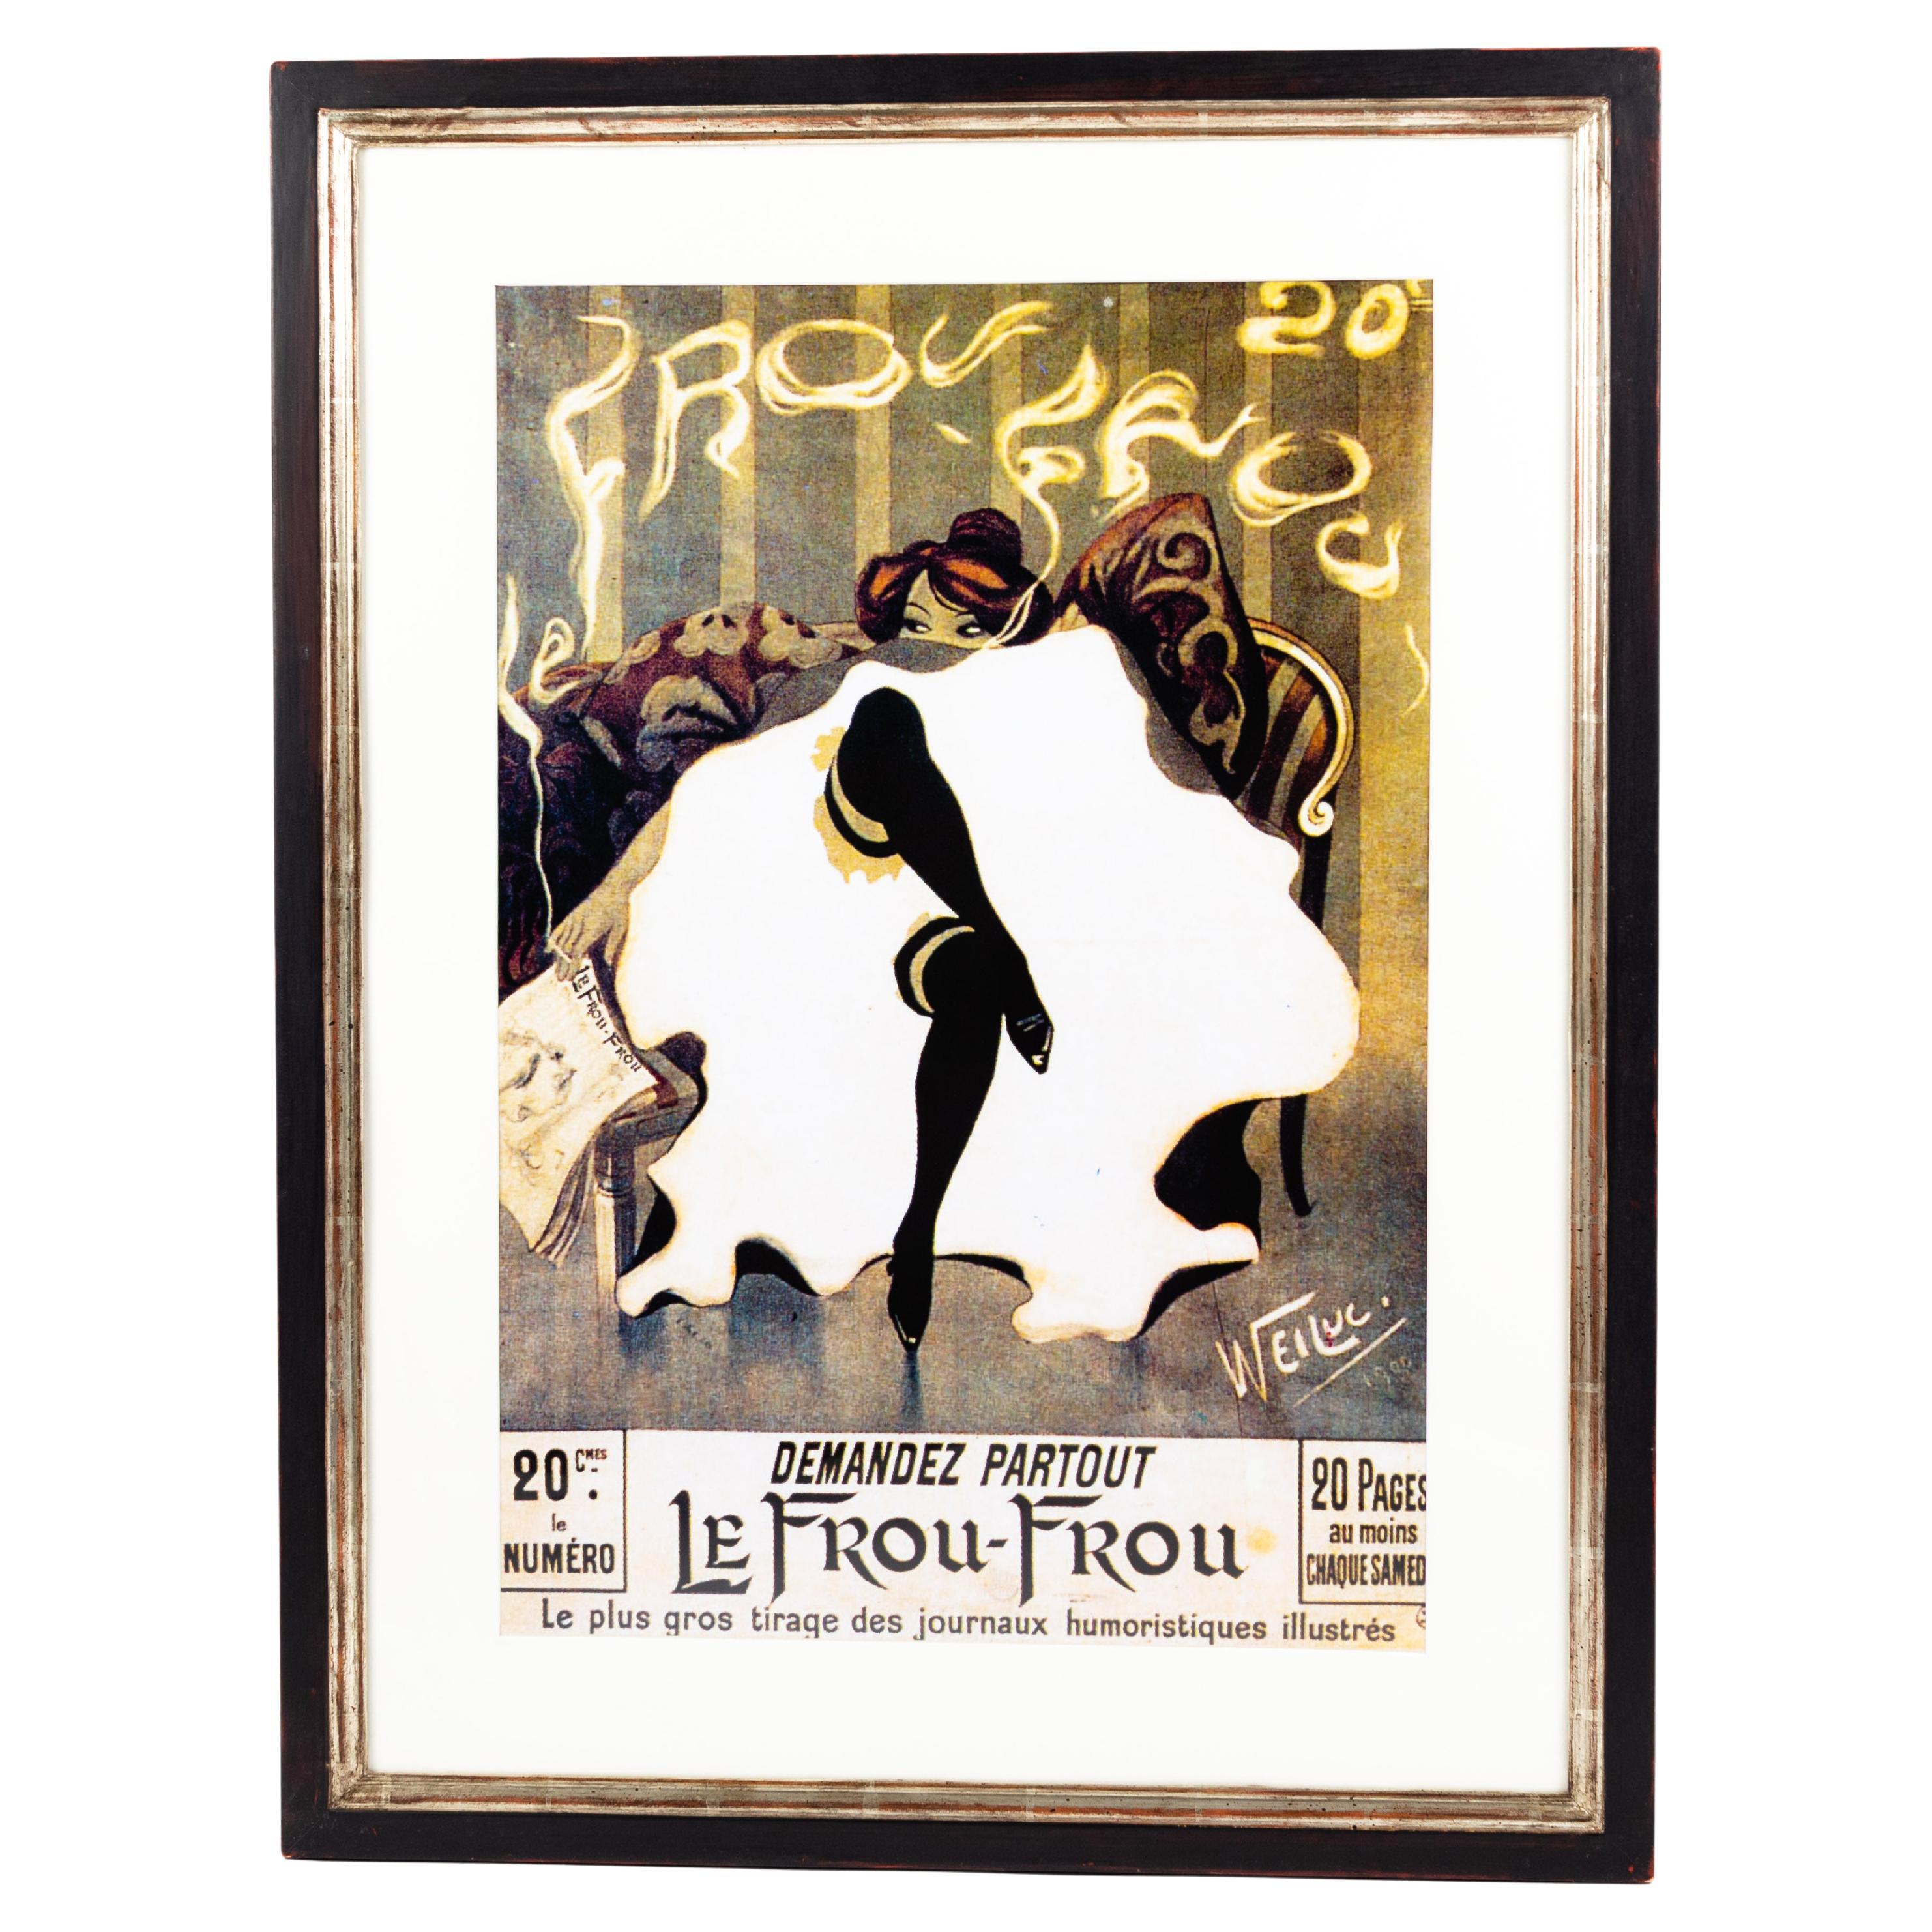 Affiche publicitaire française Art nouveau vert-blanc-noir avec danse de cancan, années 1980